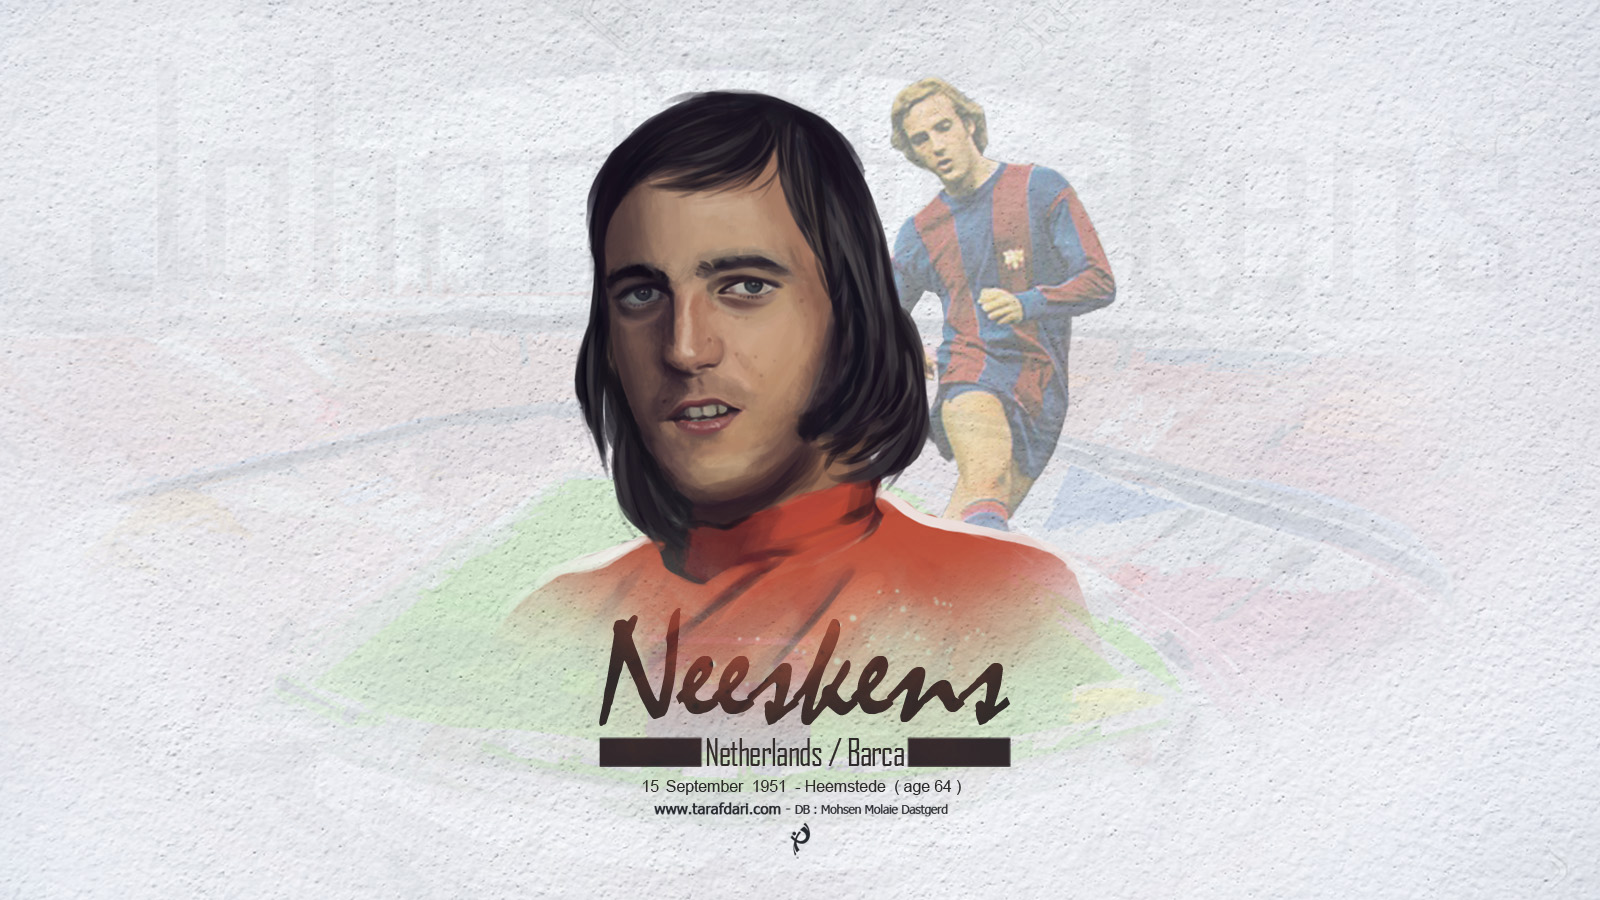 پوستر اختصاصی طرفداری؛ یوهان نیسکنز، فوق ستاره هلندی دهه هفتاد بارسلونا